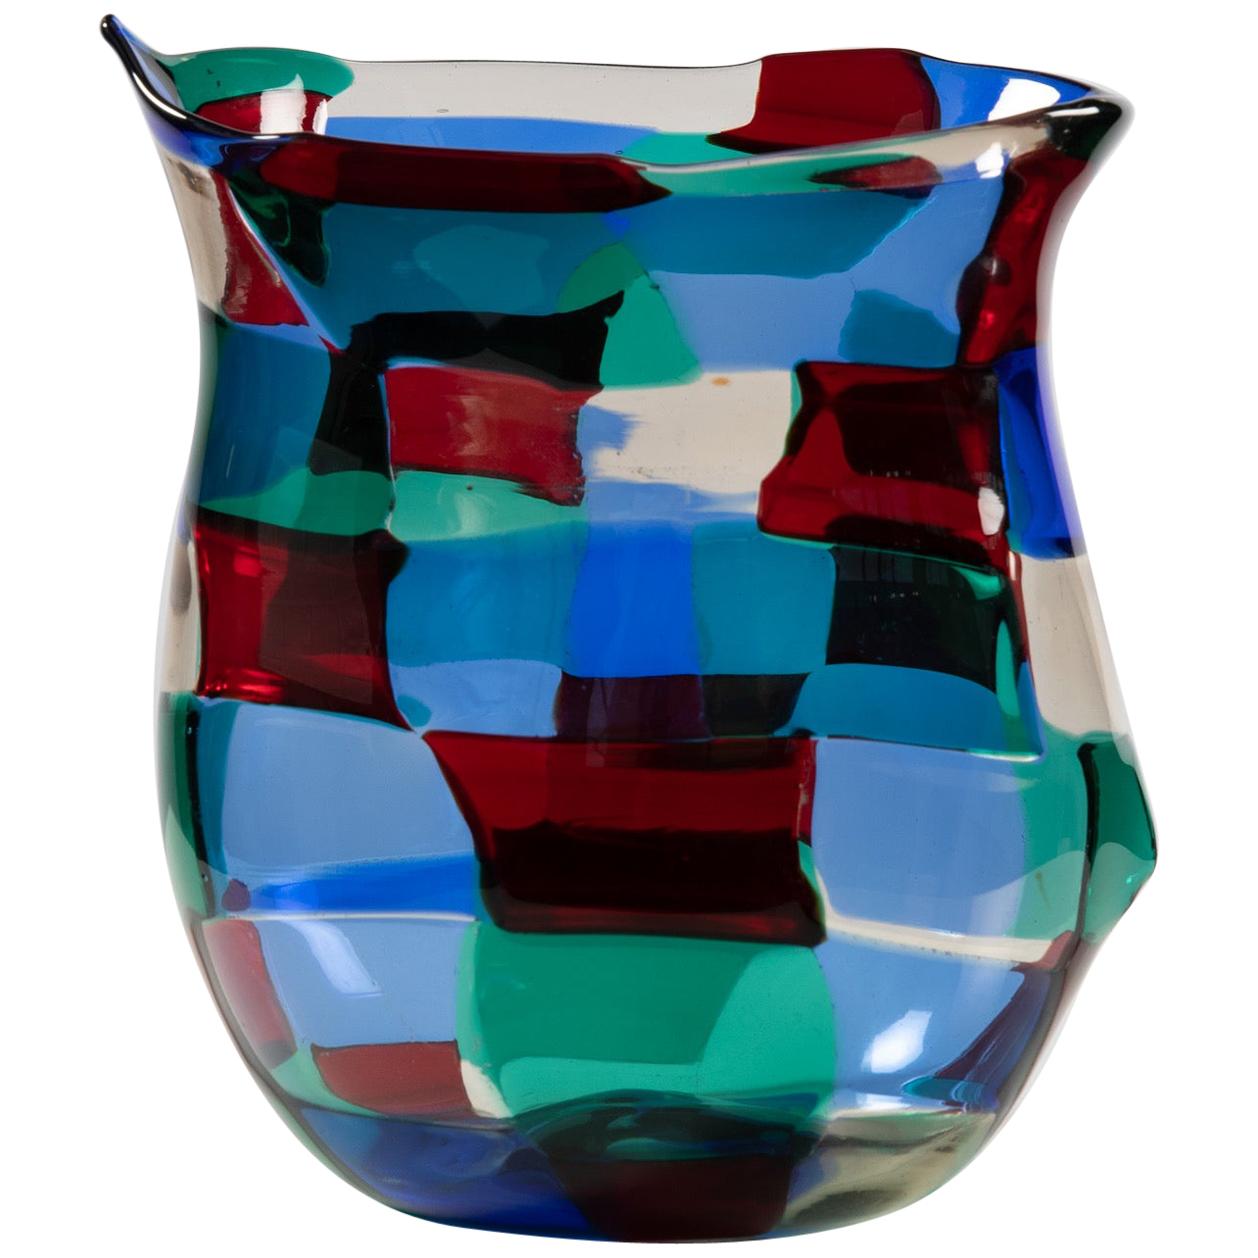 Fulvio Bianconi, “Horned” Pezzato Vase in “Paris” Color Variation, Venini Murano